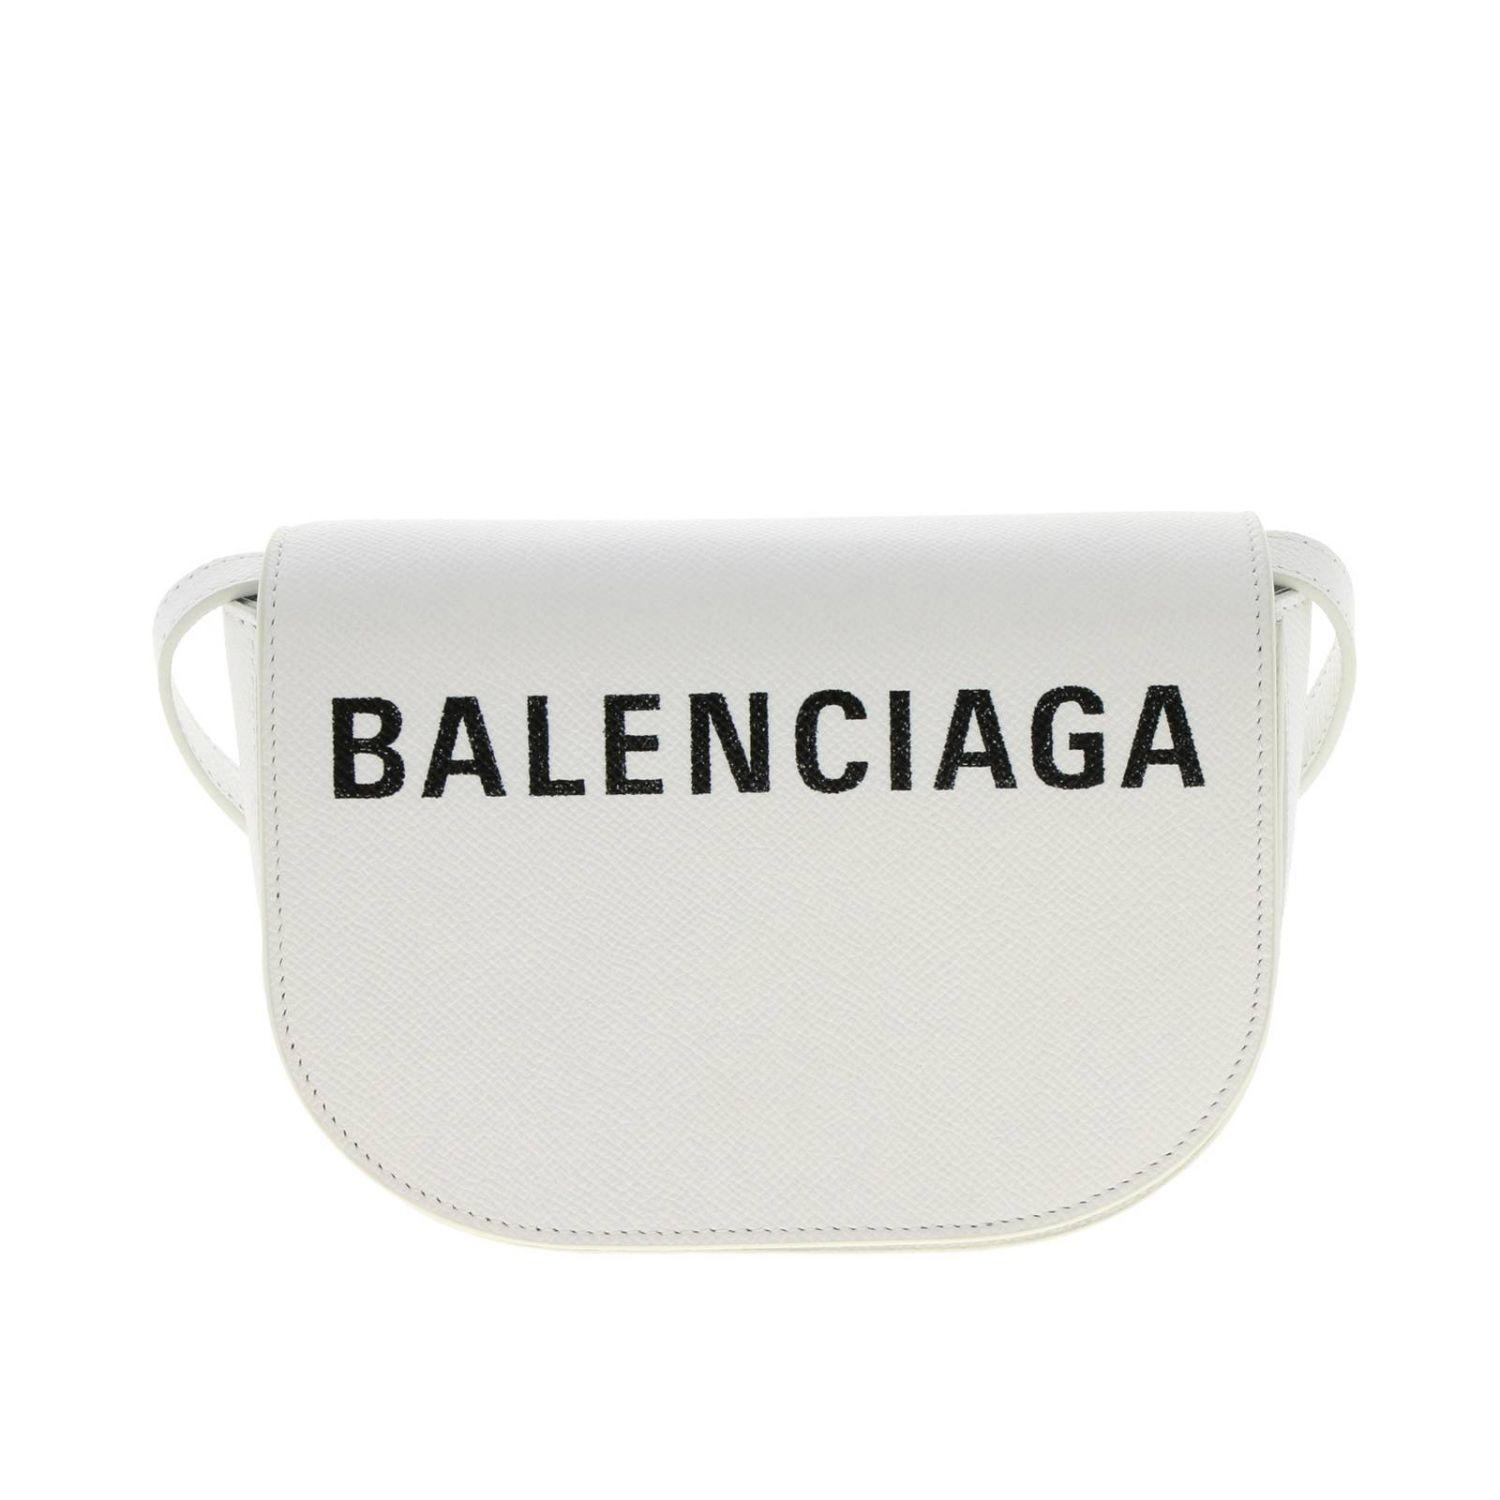 Balenciaga crossbody Bag